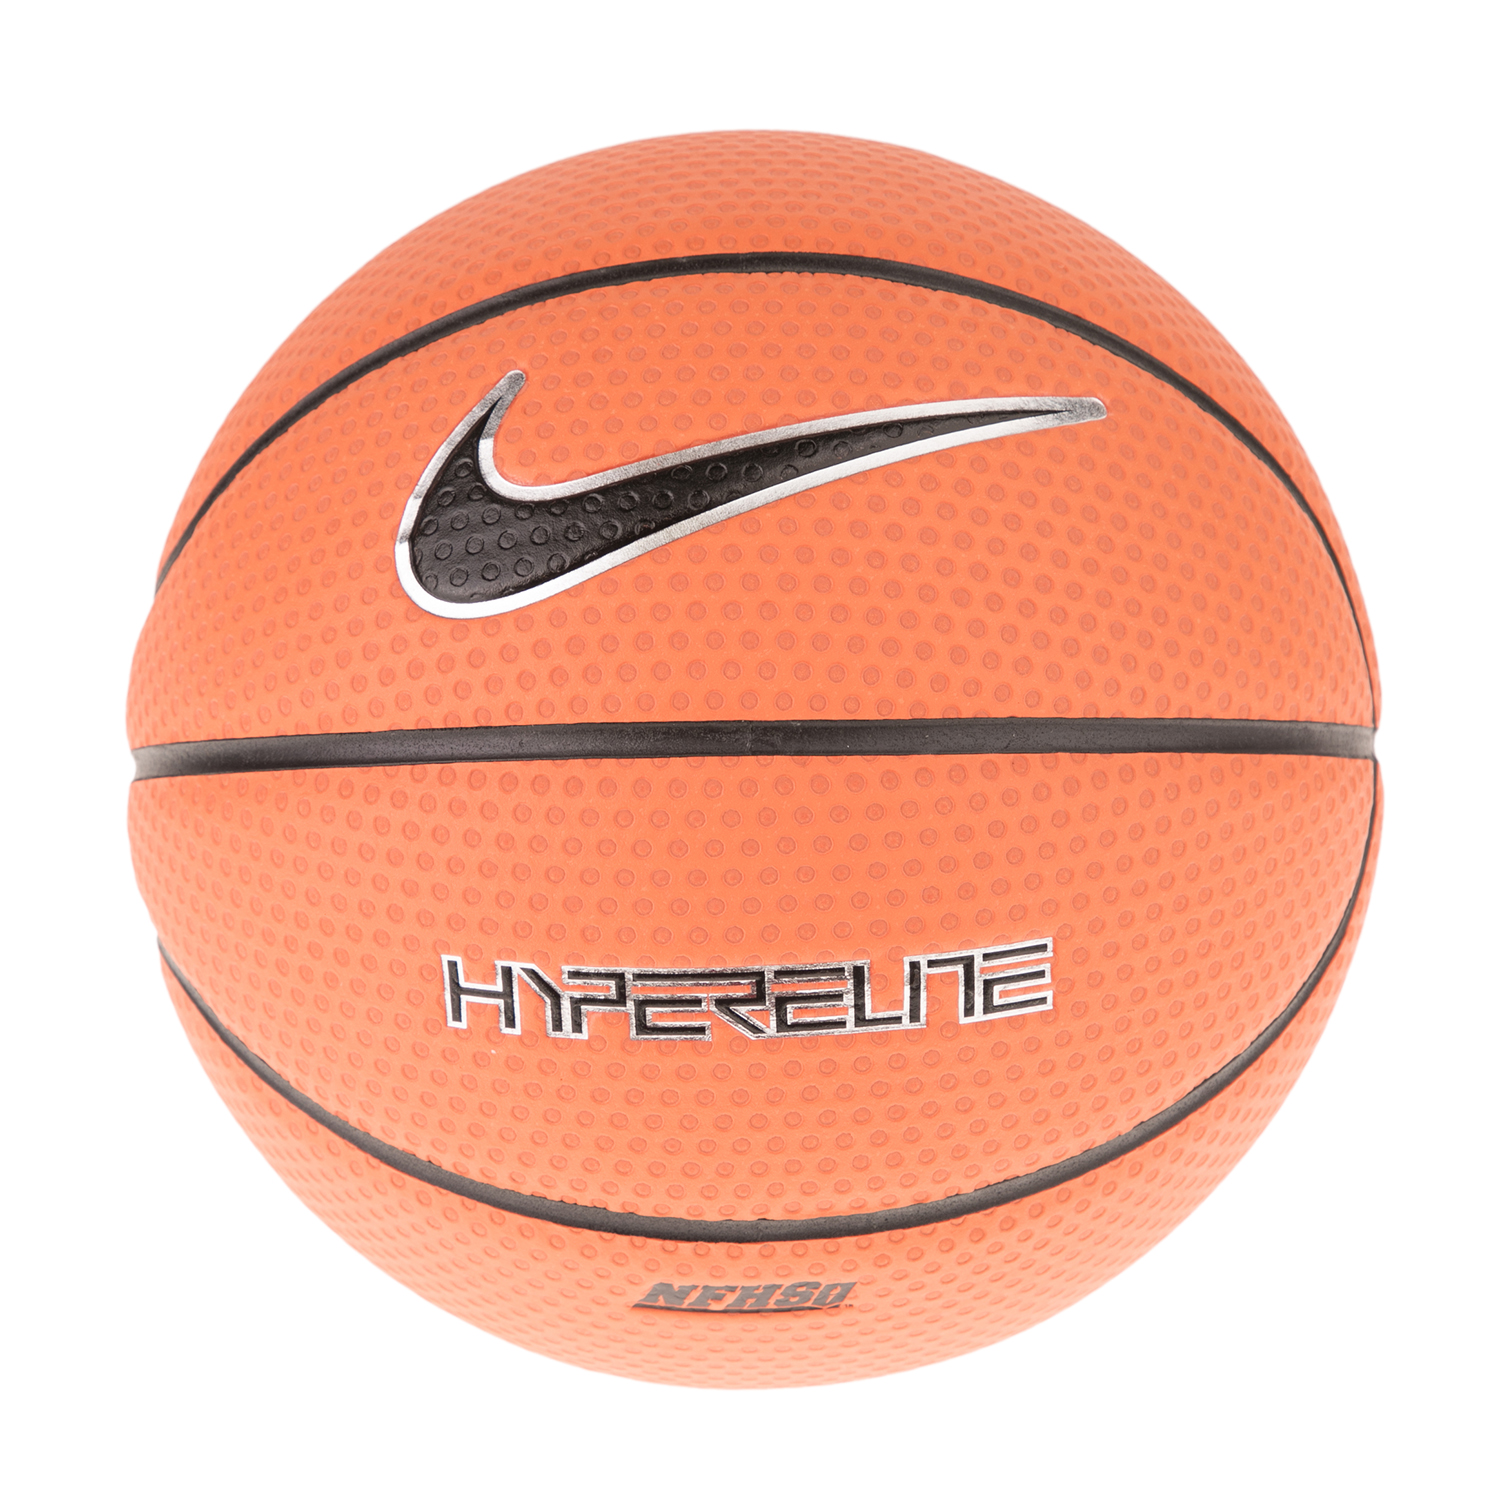 Ανδρικά/Αξεσουάρ/Αθλητικά Είδη/Μπάλες NIKE ACCESSORIES - Μπάλα μπάσκετ NIKE HYPER ELITE 8P πορτοκαλί